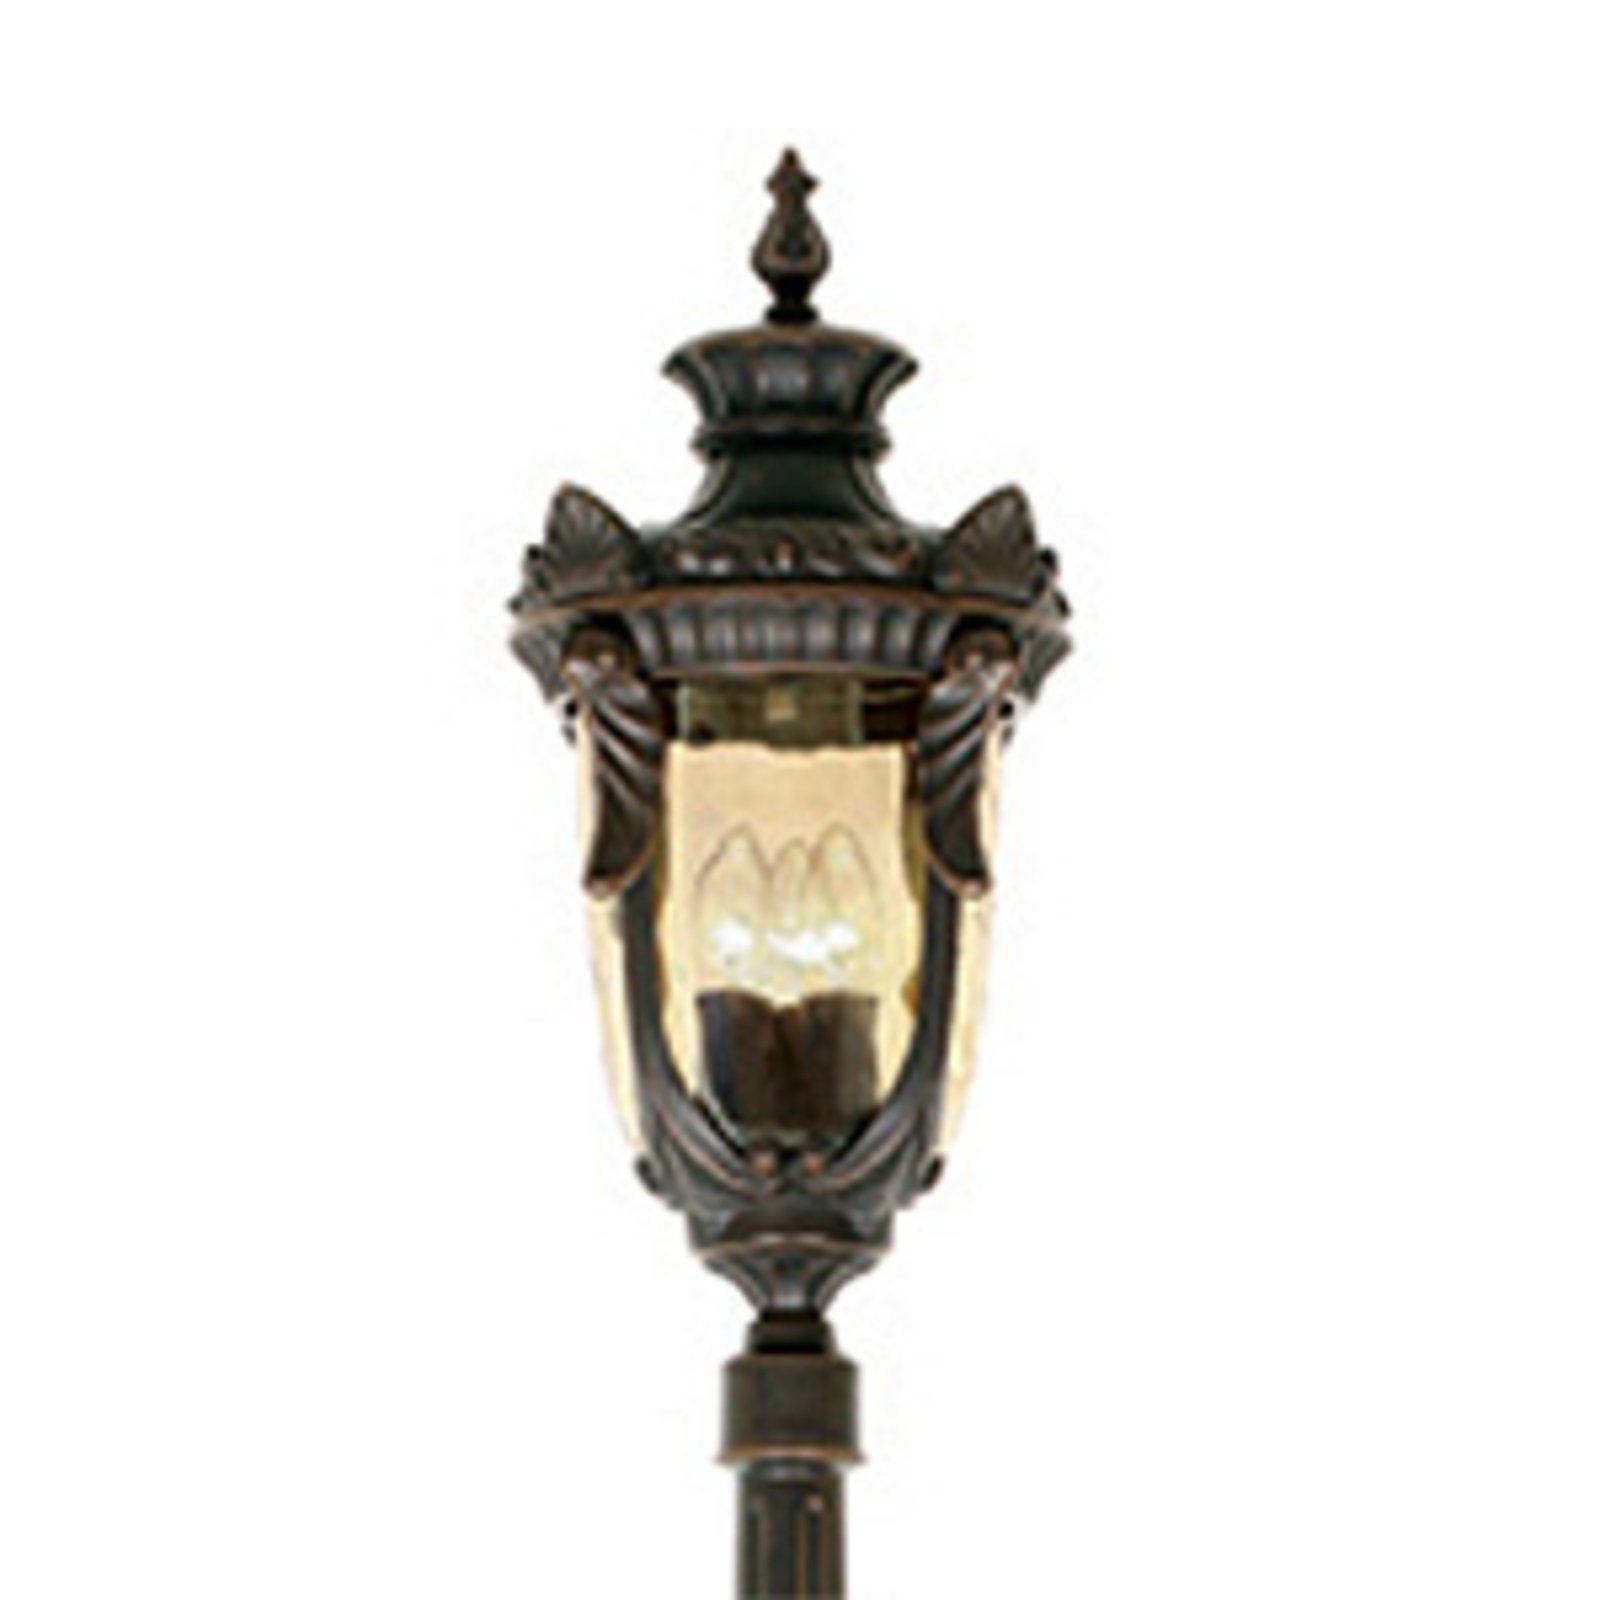 PHILADELPHIA árbóc lámpa az 1900 körüli stílusban